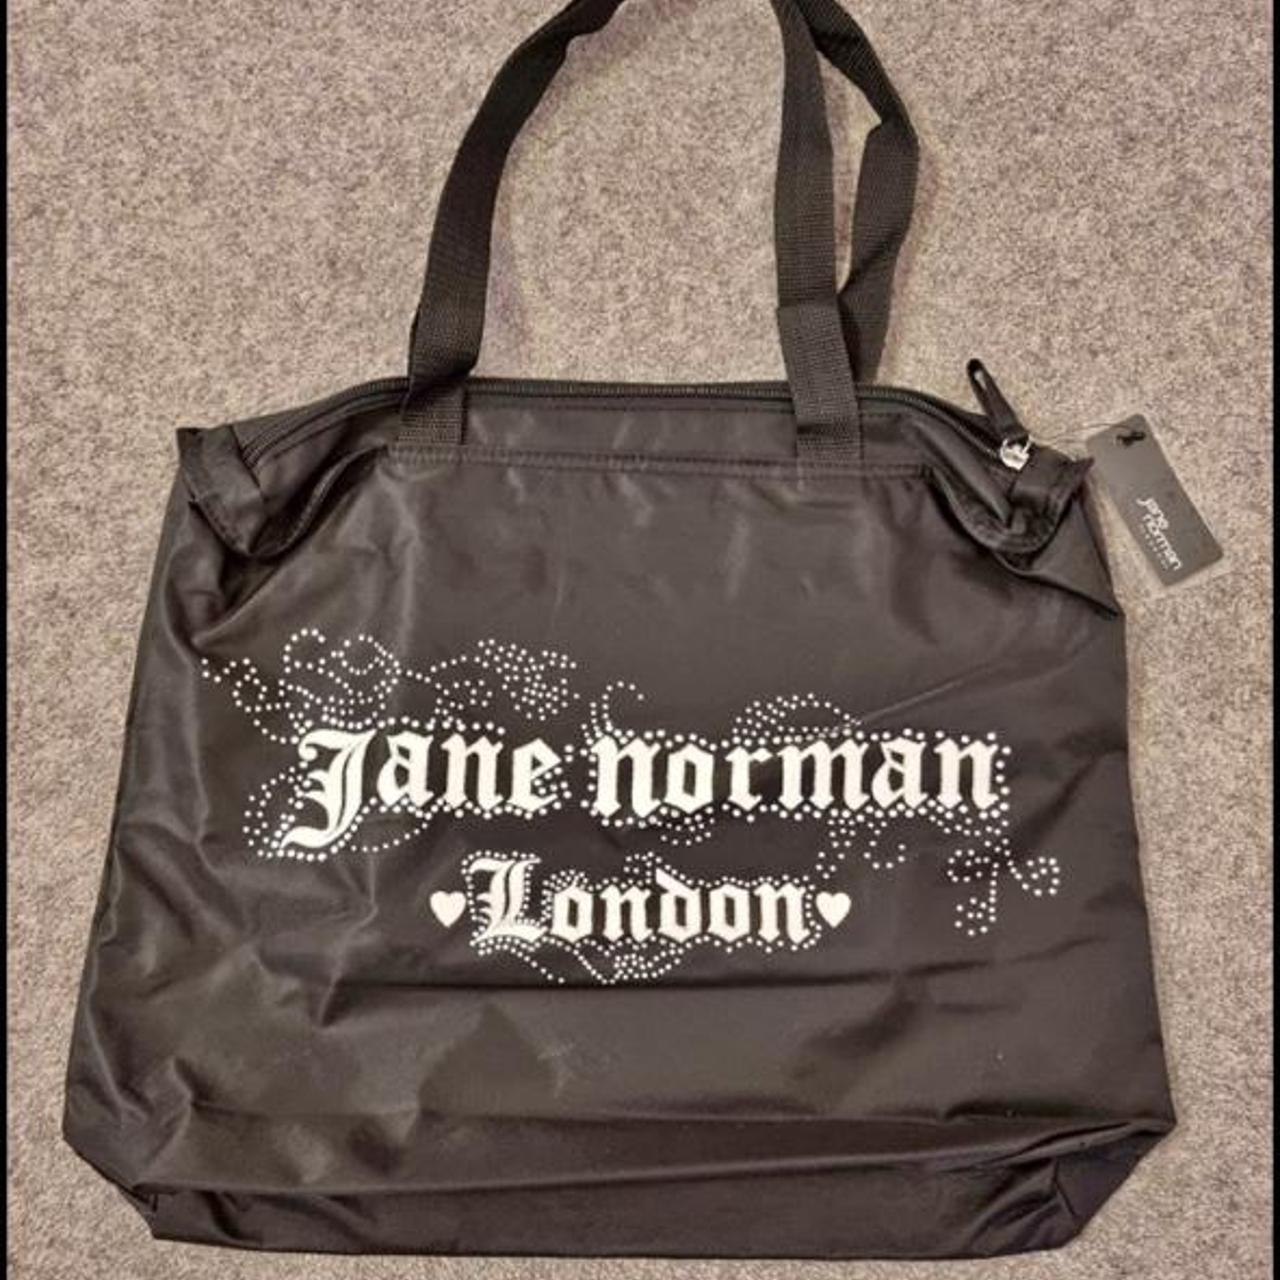 Jane Norman hand bag #y2k #00s #2000s #morgan de toi... - Depop